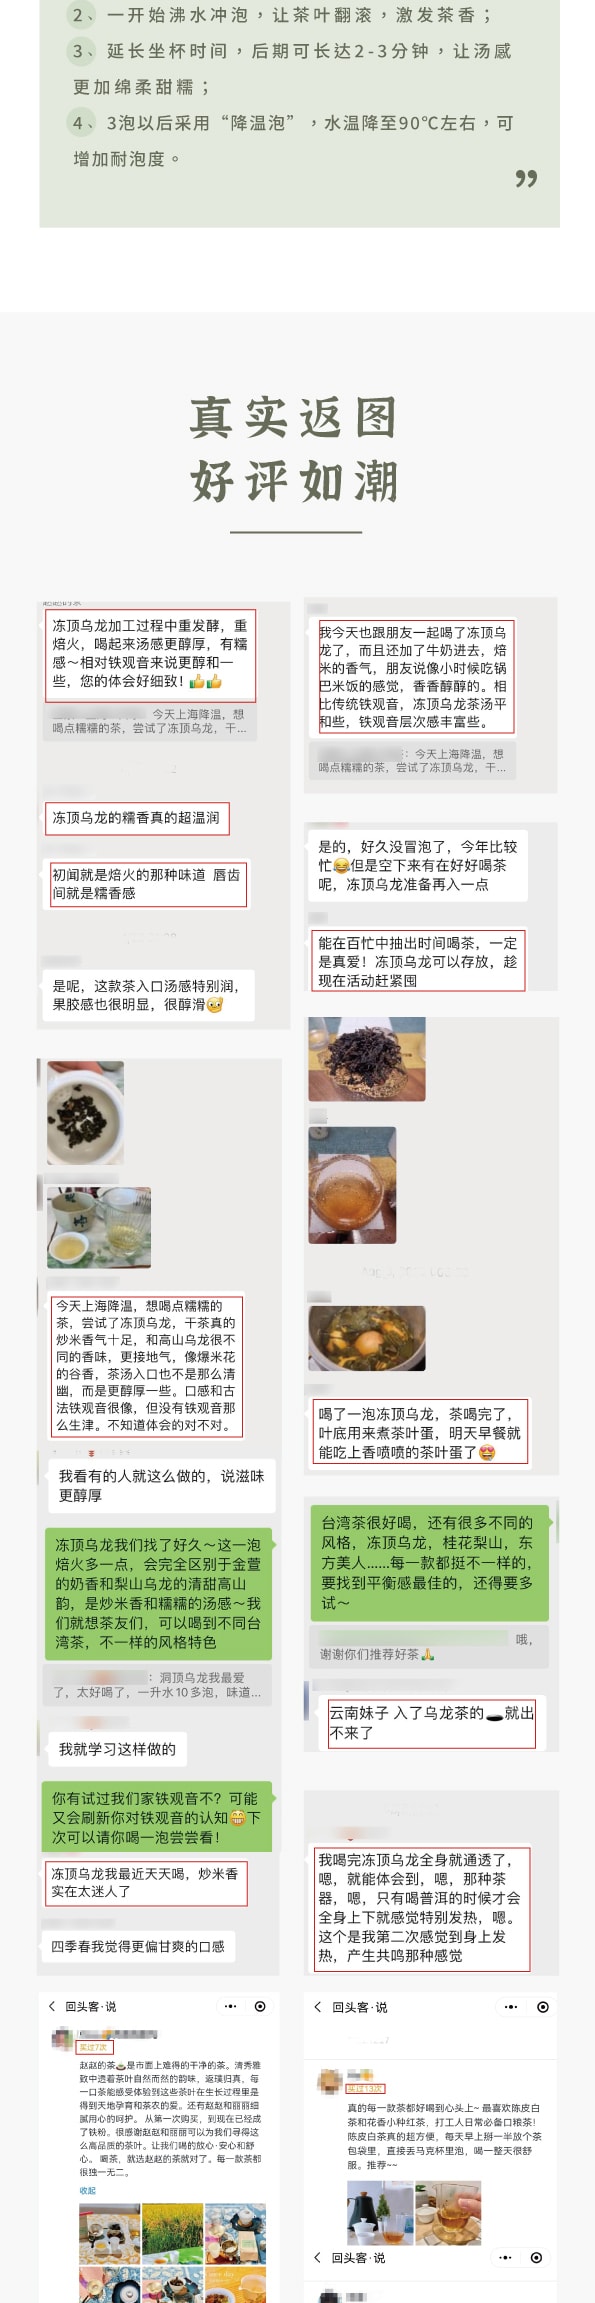 美国 赵赵的茶 ZhaoTea 冻顶乌龙 台湾台中 经典乌龙茶 炒米香 汤感温和 60g